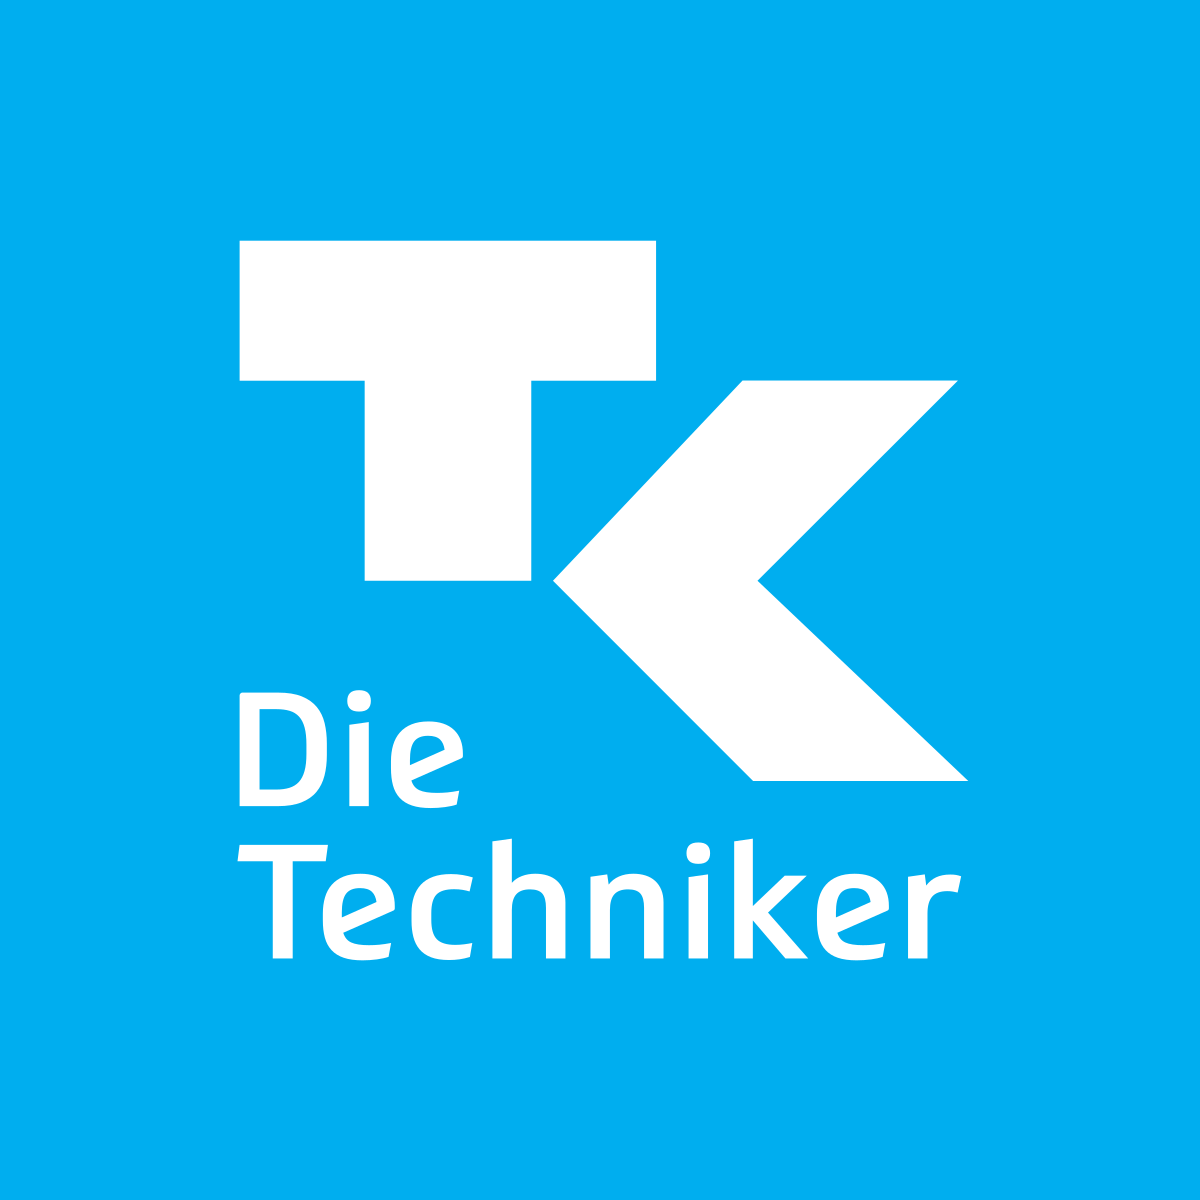 Techniker_Krankenkasse_2016_logo.svg_